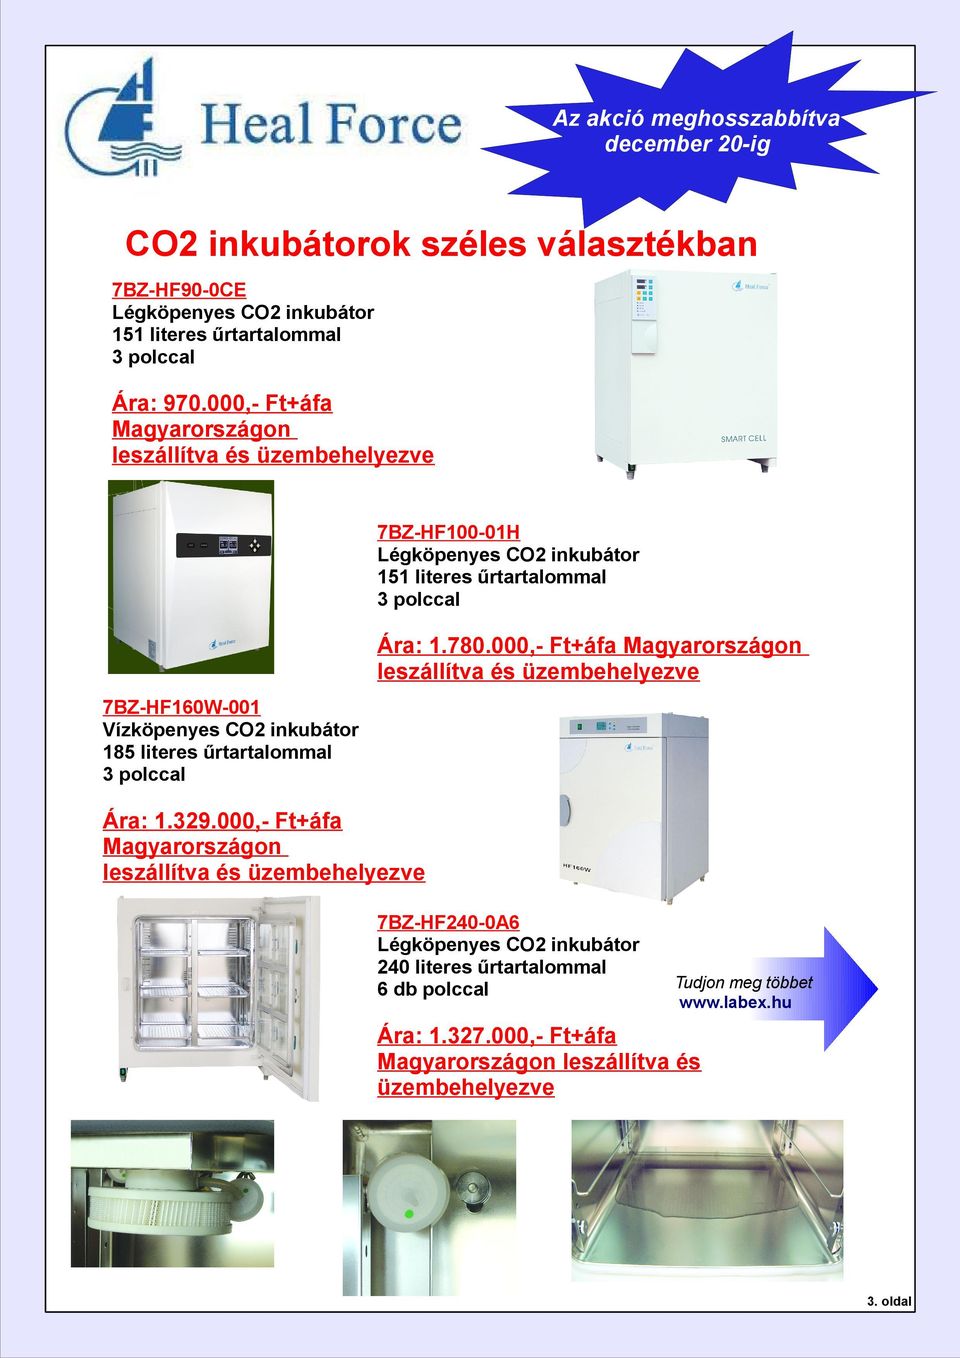 000,- Ft+áfa Magyarországon leszállítva és üzembehelyezve 7BZ-HF160W-001 Vízköpenyes CO2 inkubátor 185 literes űrtartalommal 3 polccal Ára: 1.329.